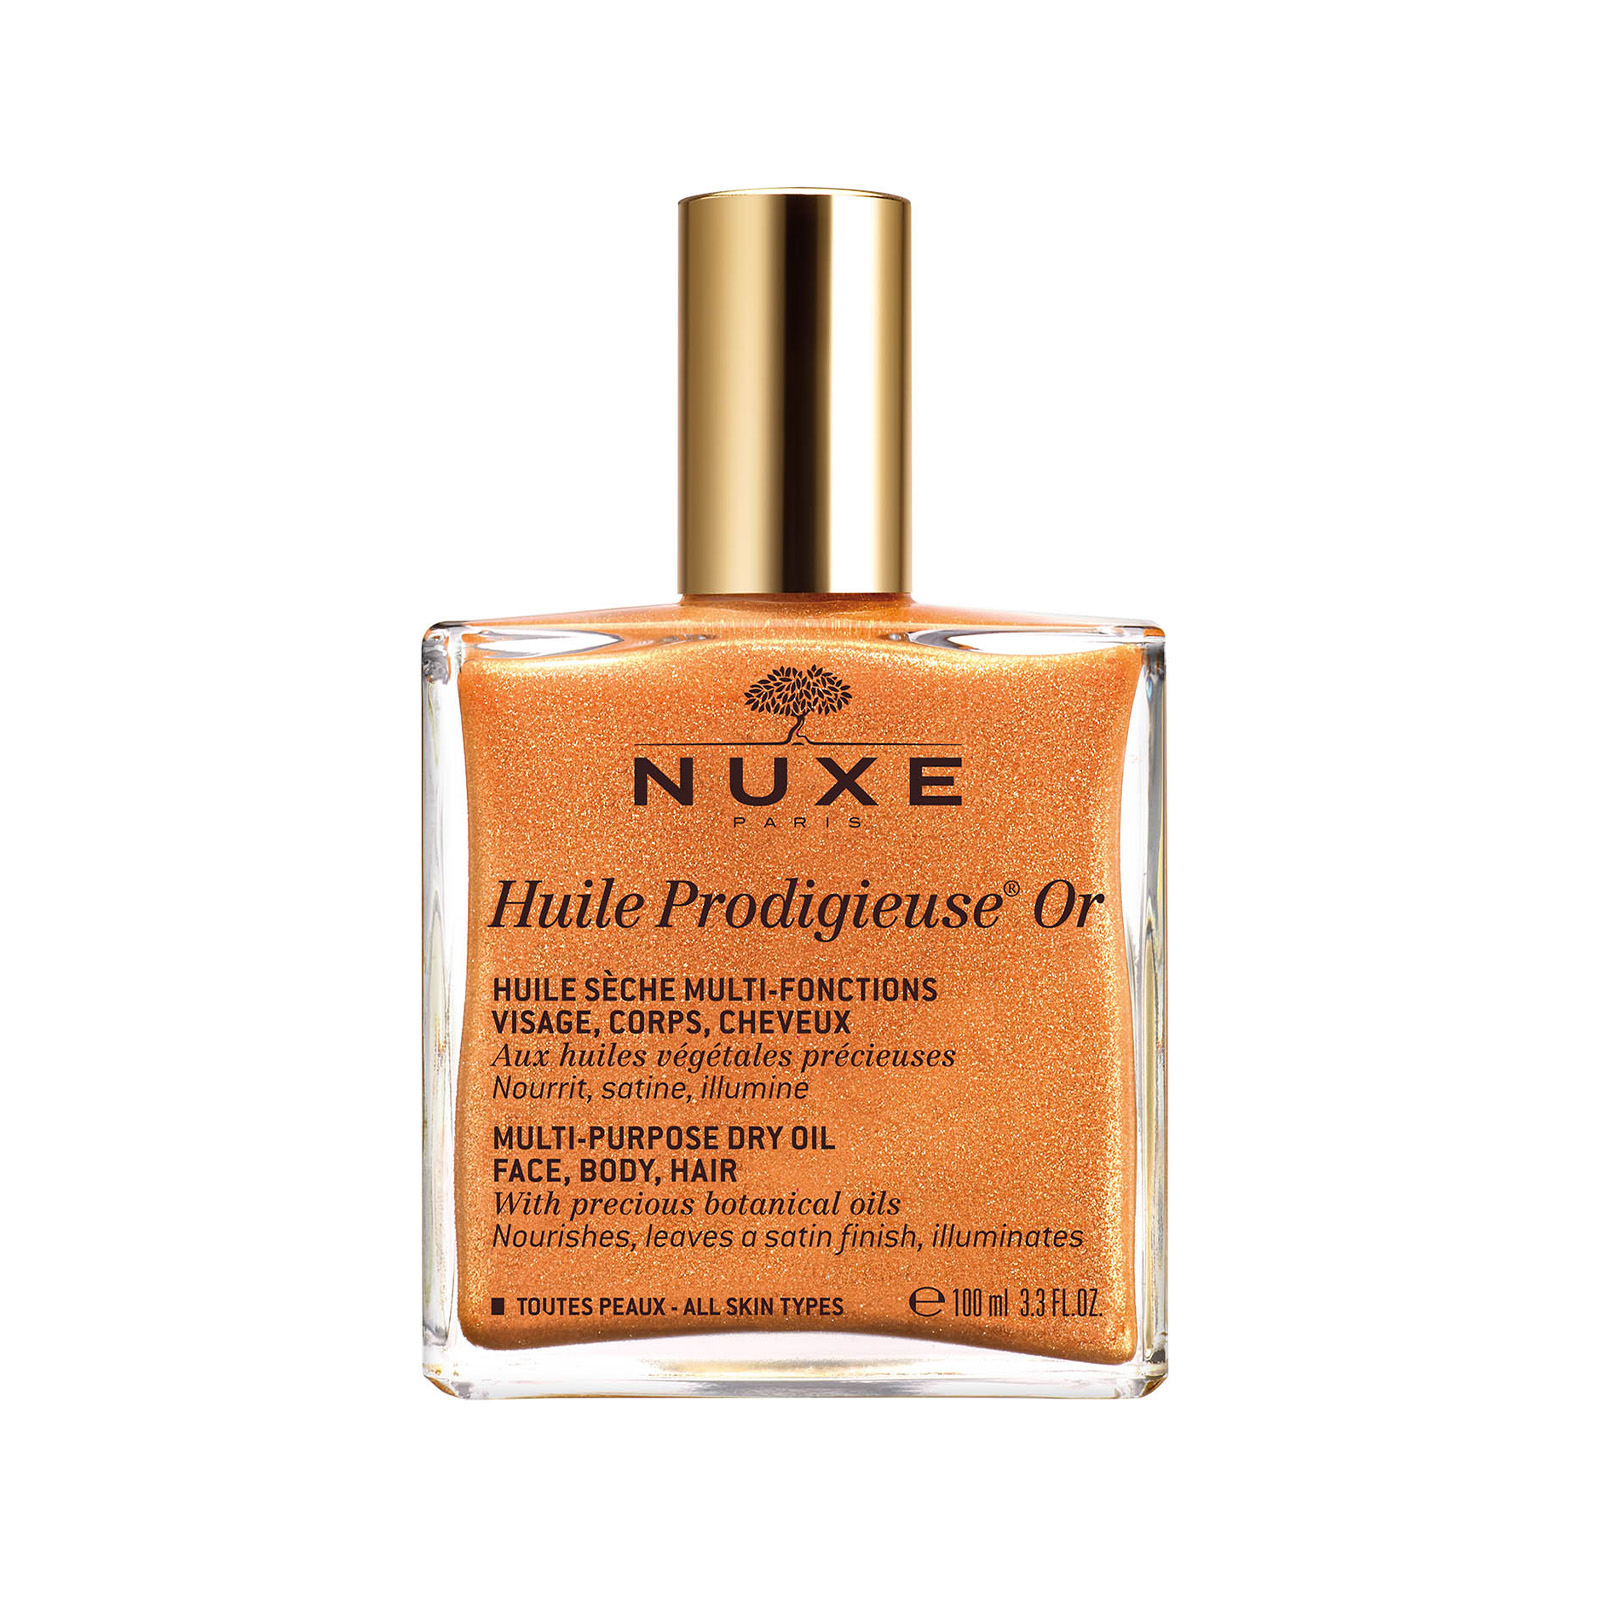 Nuxe Huile Prodigieuse Shimmering Dry Oil 100ml For Hair & Body in Dubai, UAE